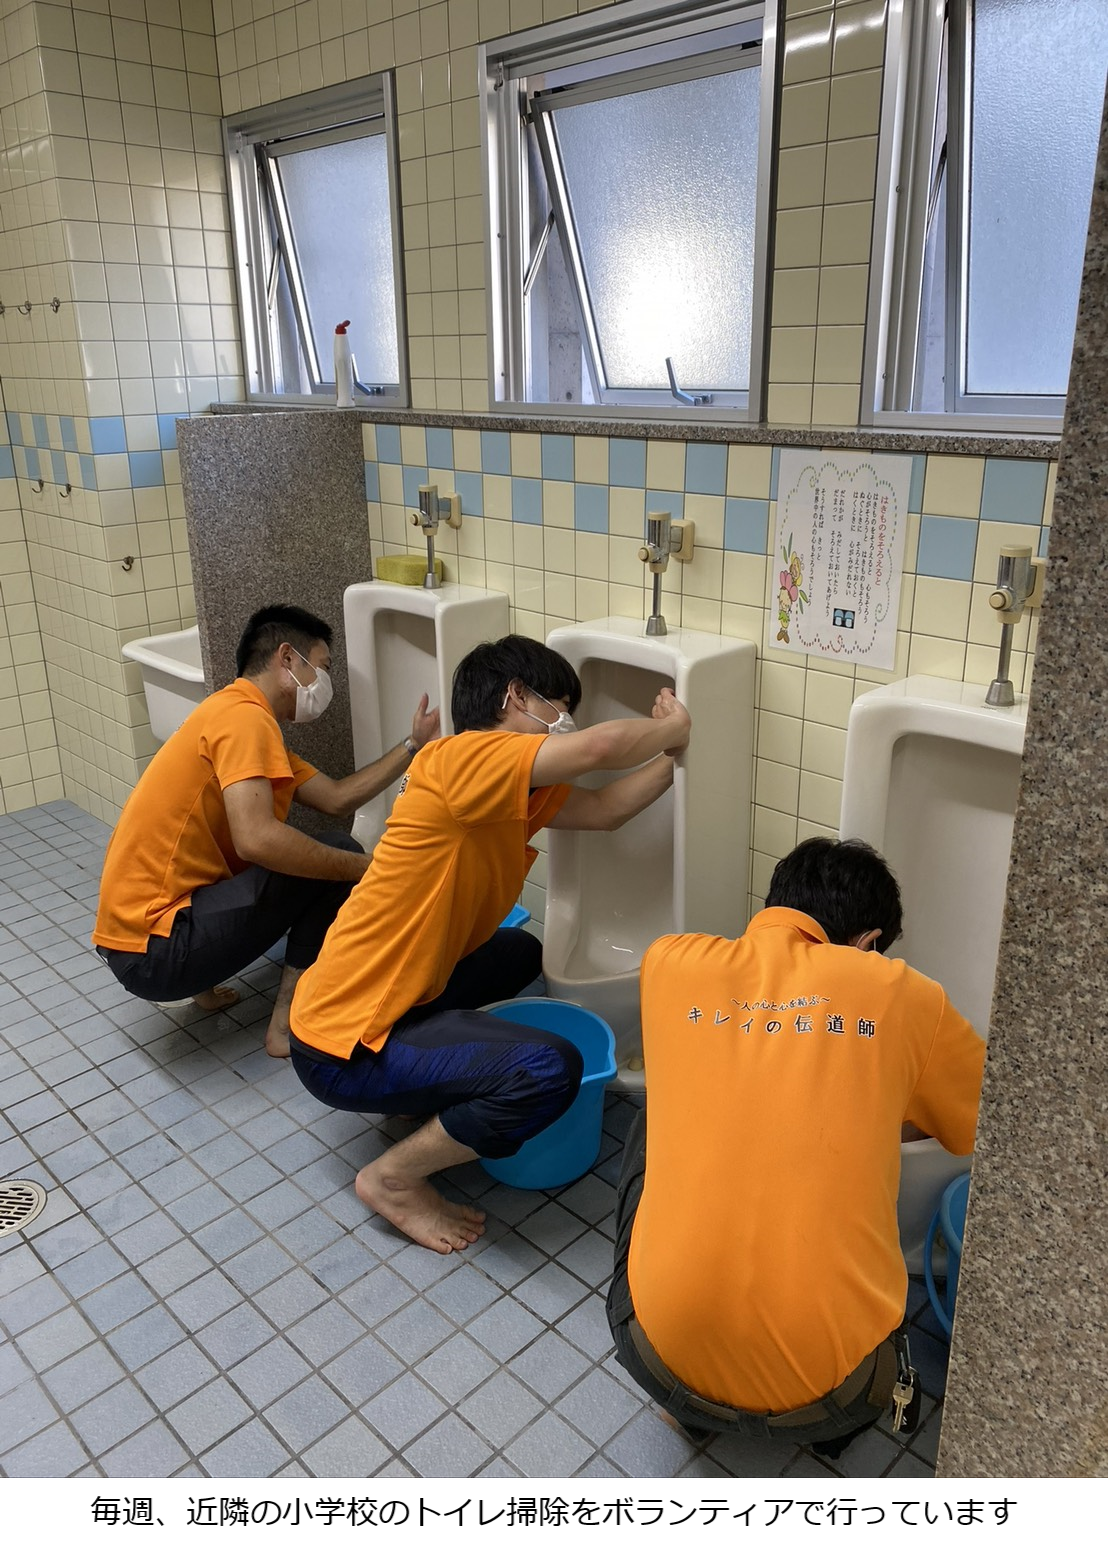 毎週、近隣の小学校のトイレ掃除をボランティアで行っています